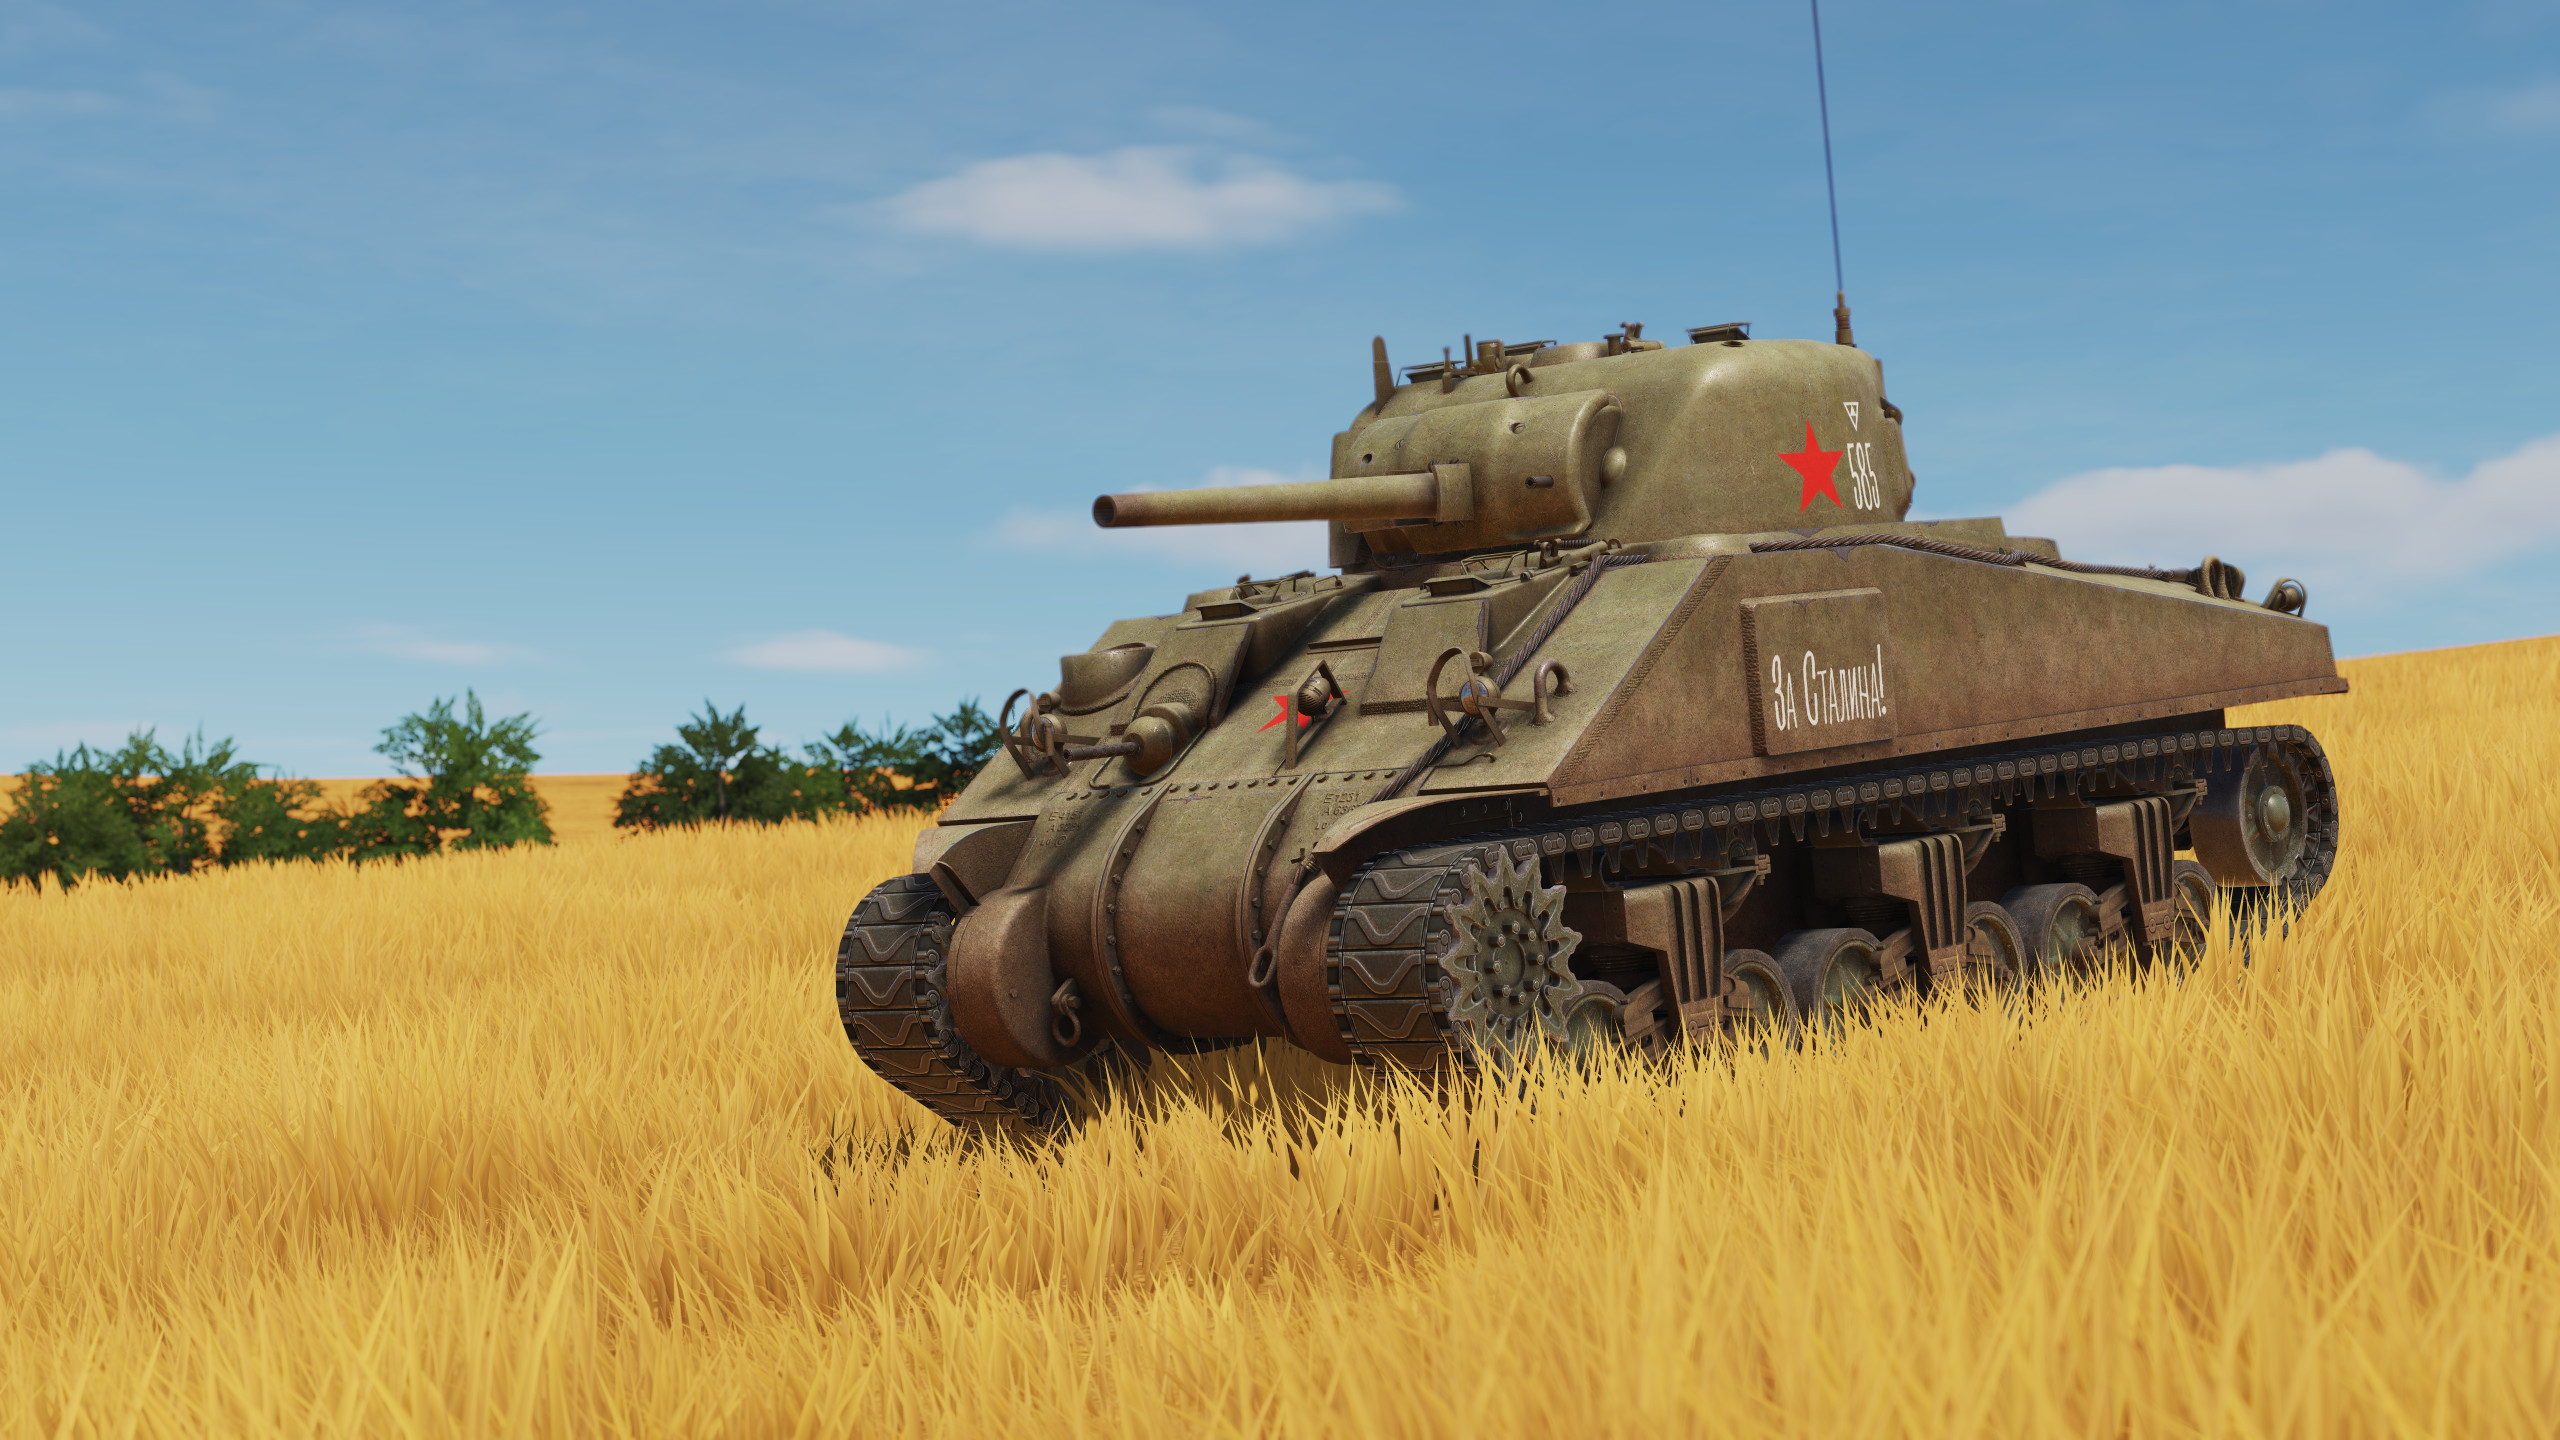 3rd Guard Mech Corps "Za Stalina!" M4 Sherman